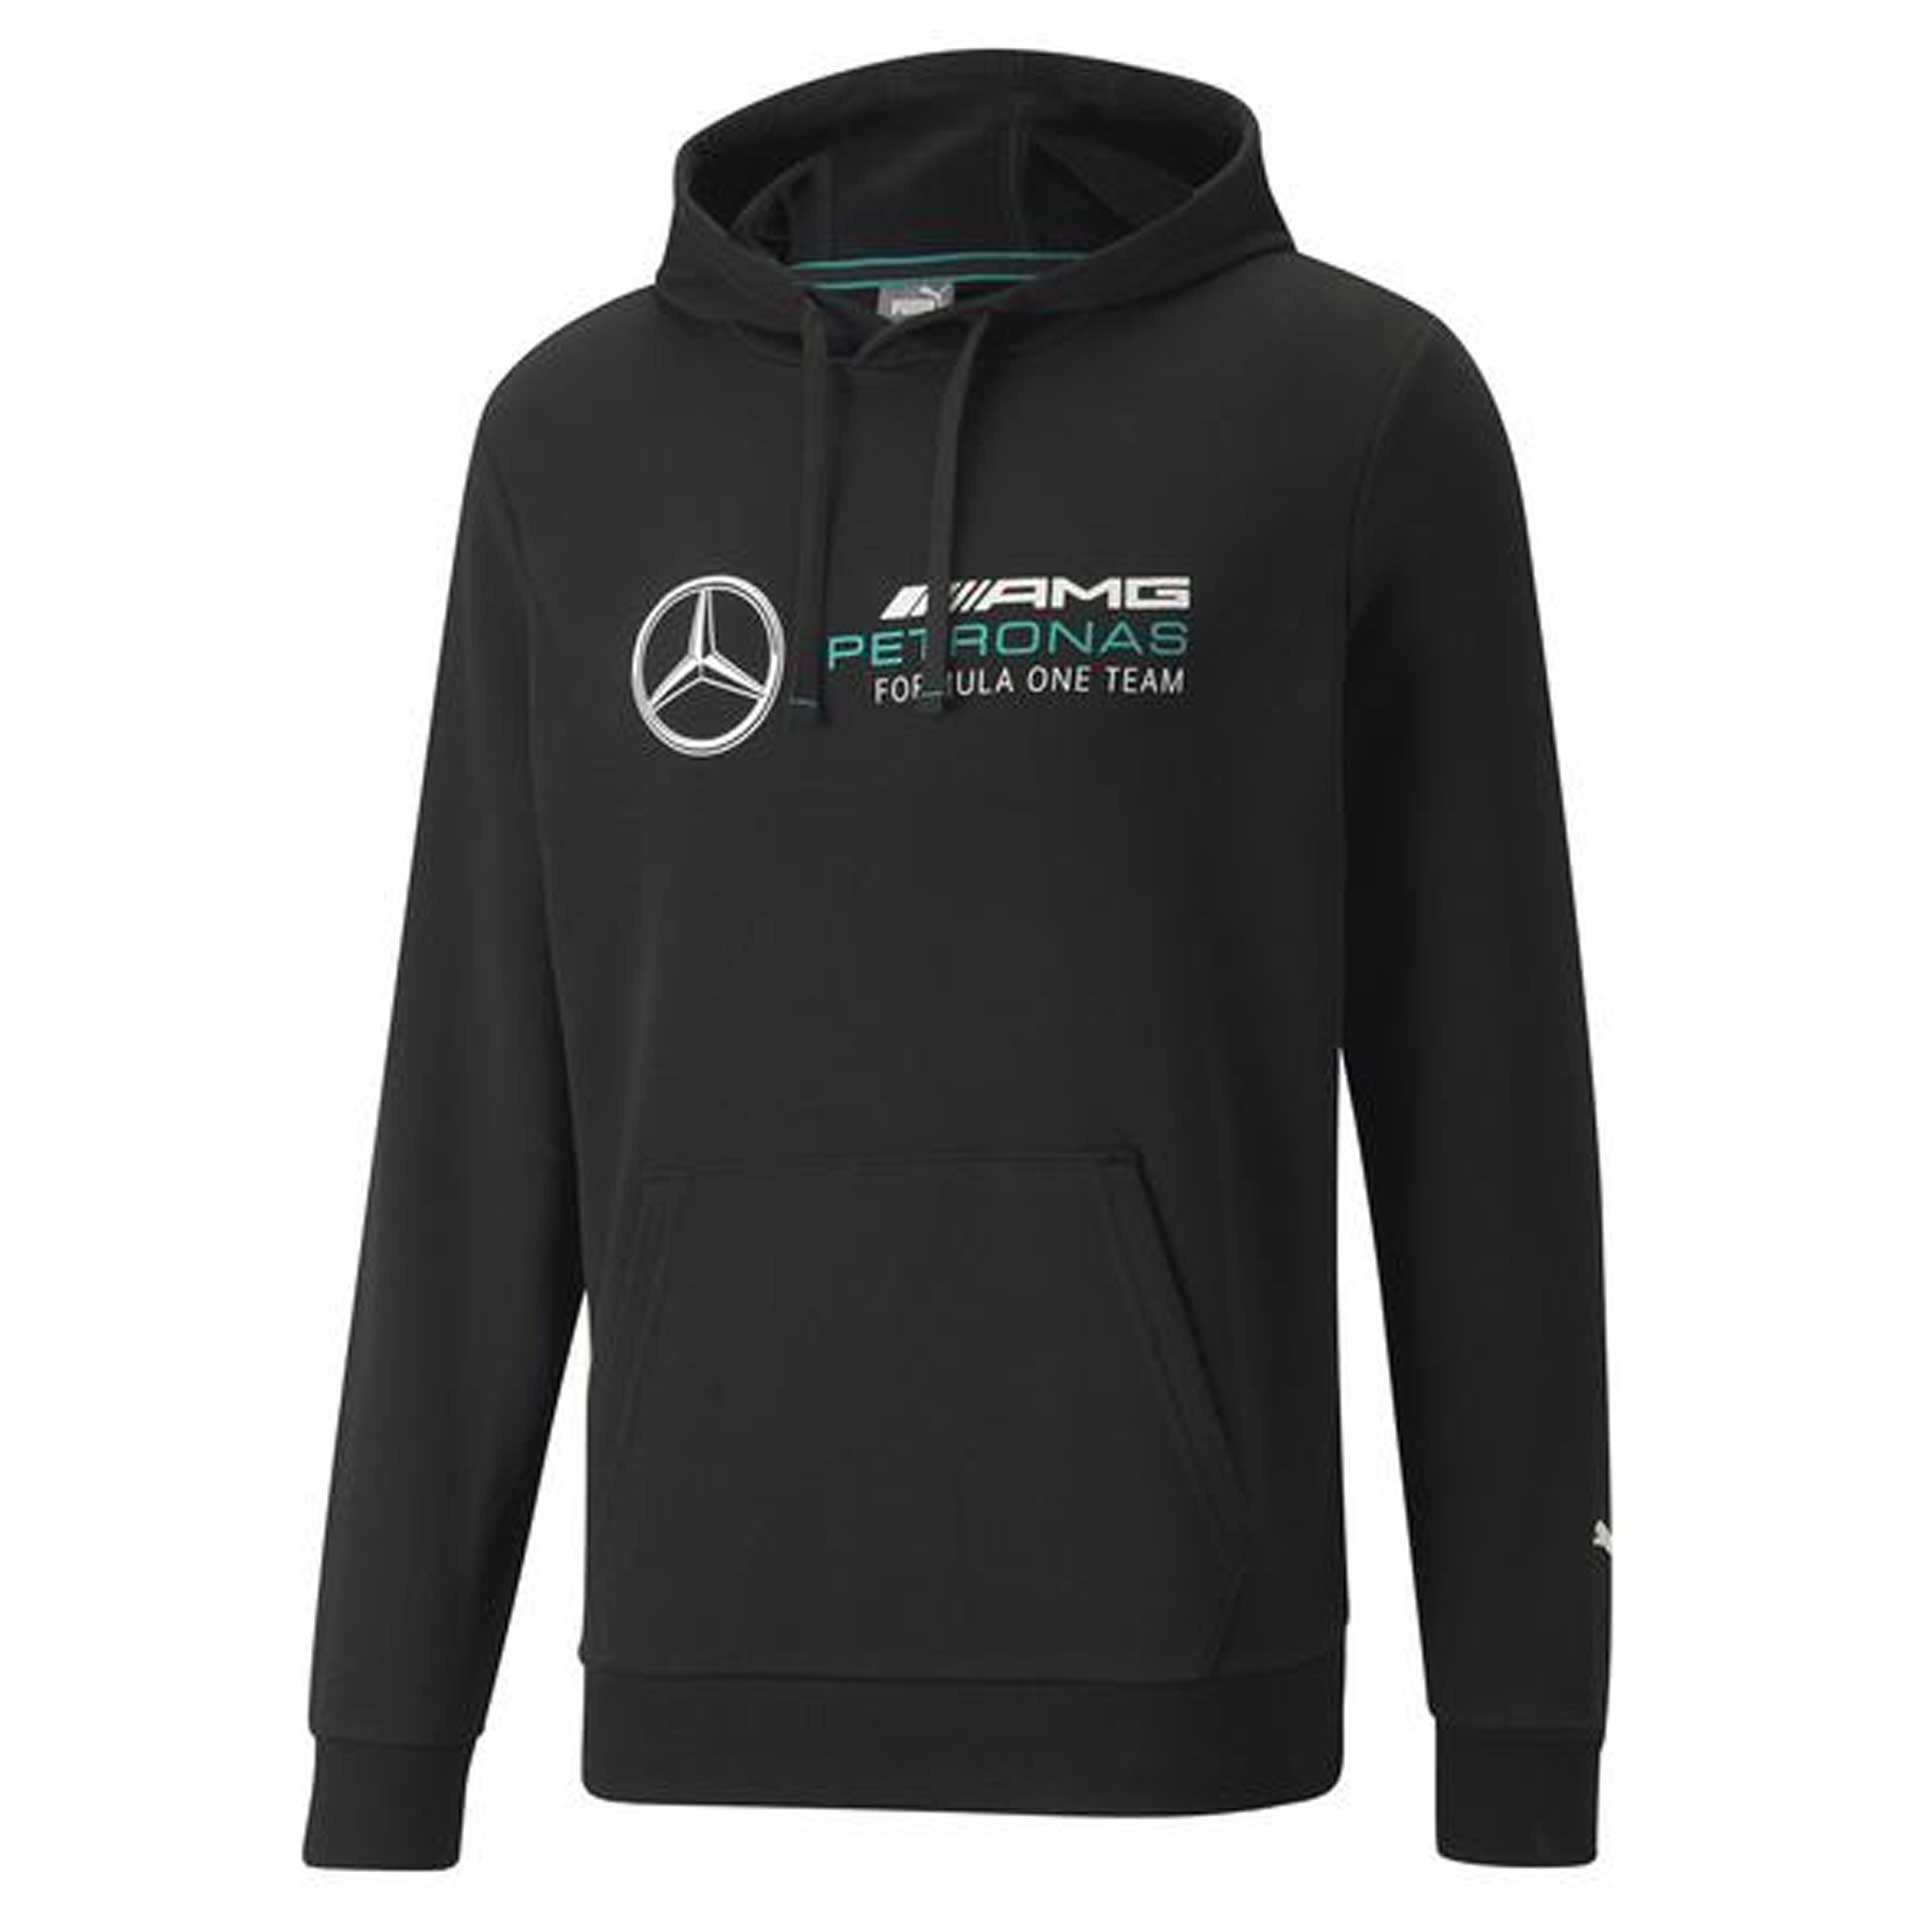 Mercedes-AMG Sweathoody Herren schwarz Petronas Motorsports Collection by PUMA Größe S B67997173